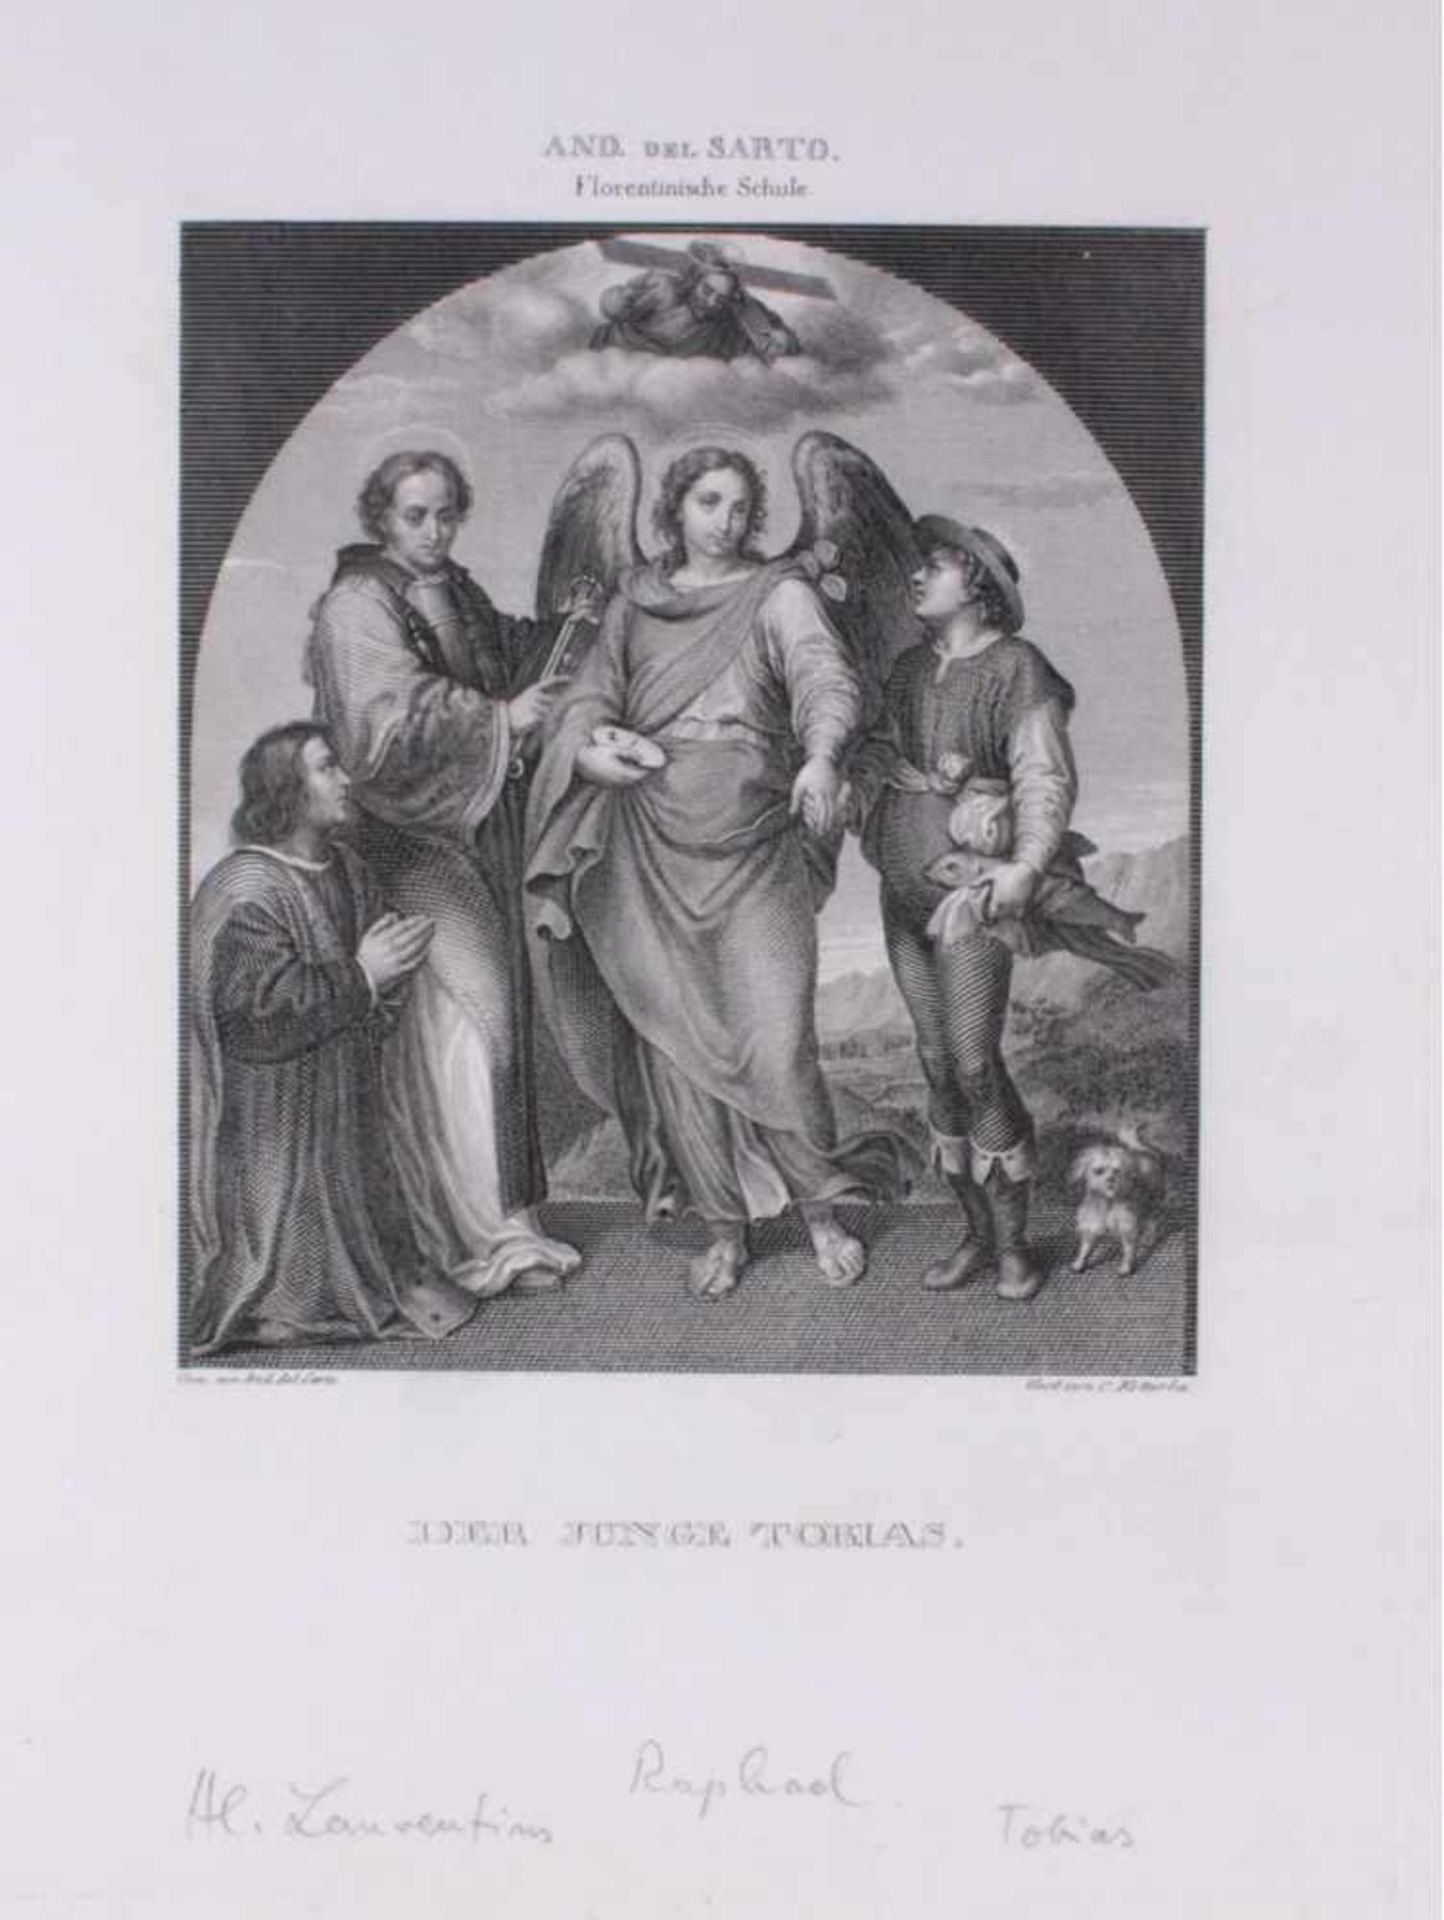 2 Stahlstische um 1840. Heilung des alten Tobias -Der Junge Tobias, nach Caravaggio und And. del - Image 2 of 3